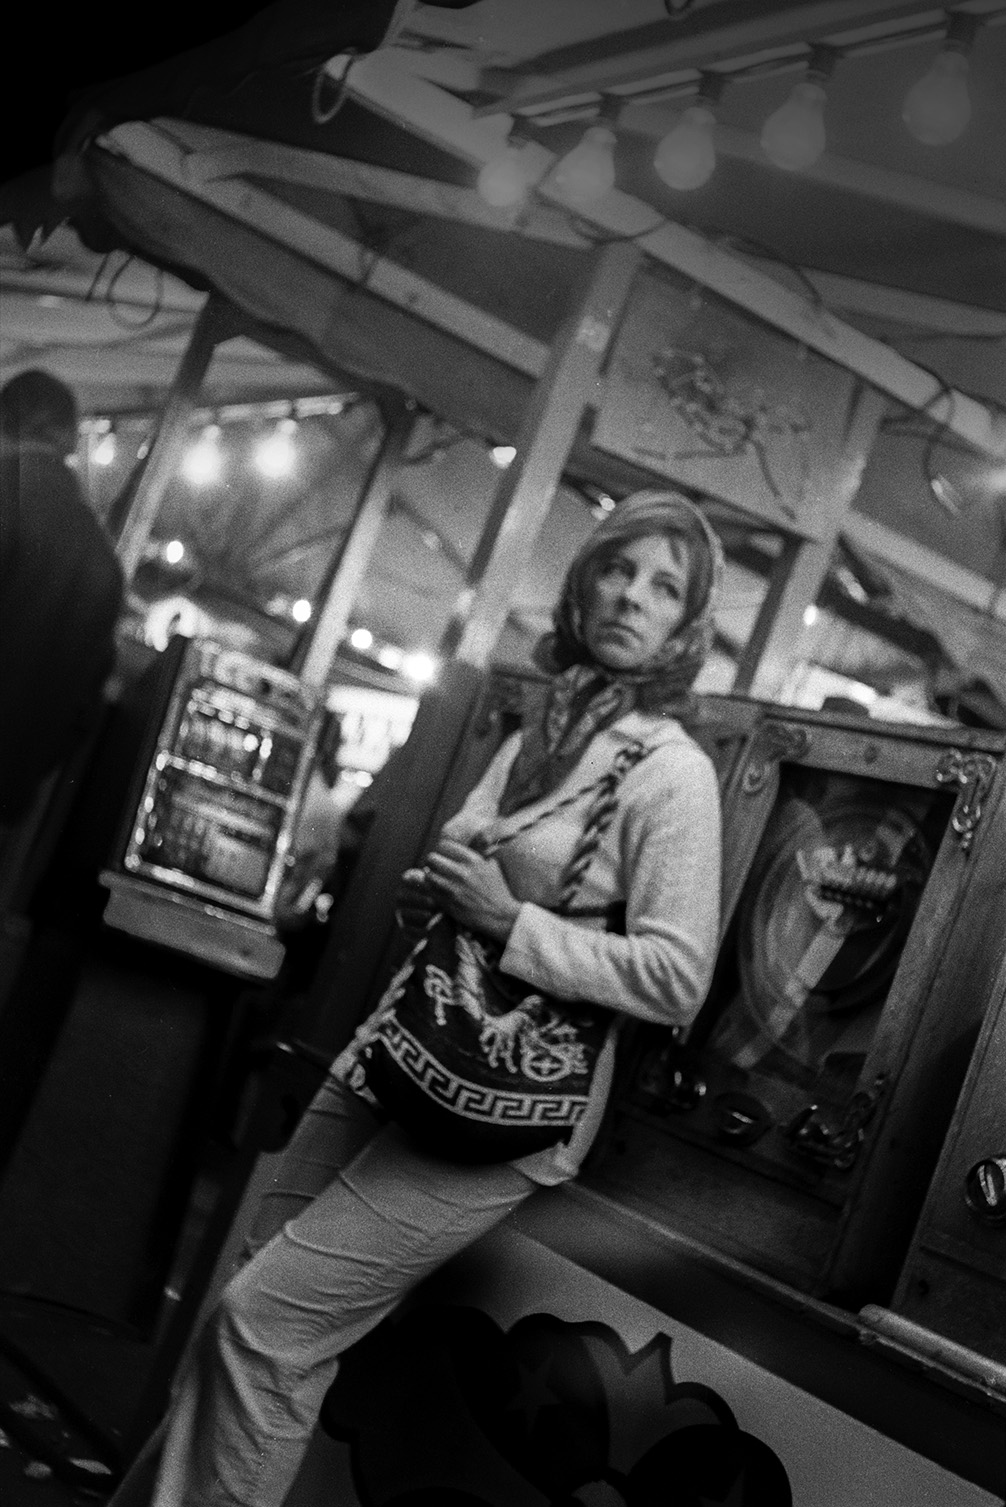 A woman standing by slot machines at Bideford Fair.